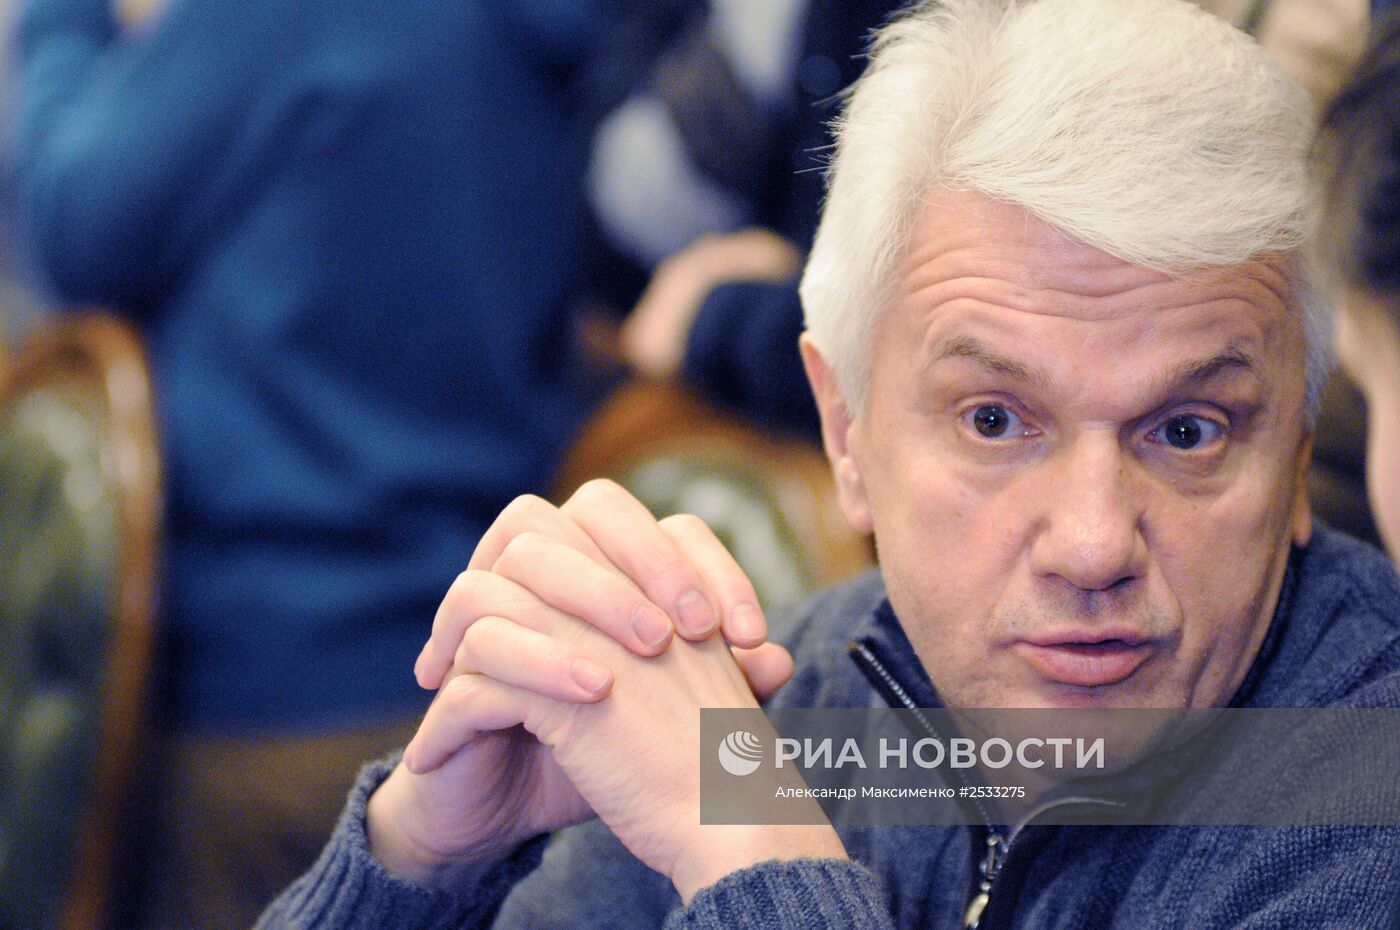 Заседание подготовительной депутатской группы Верховной Рады Украины